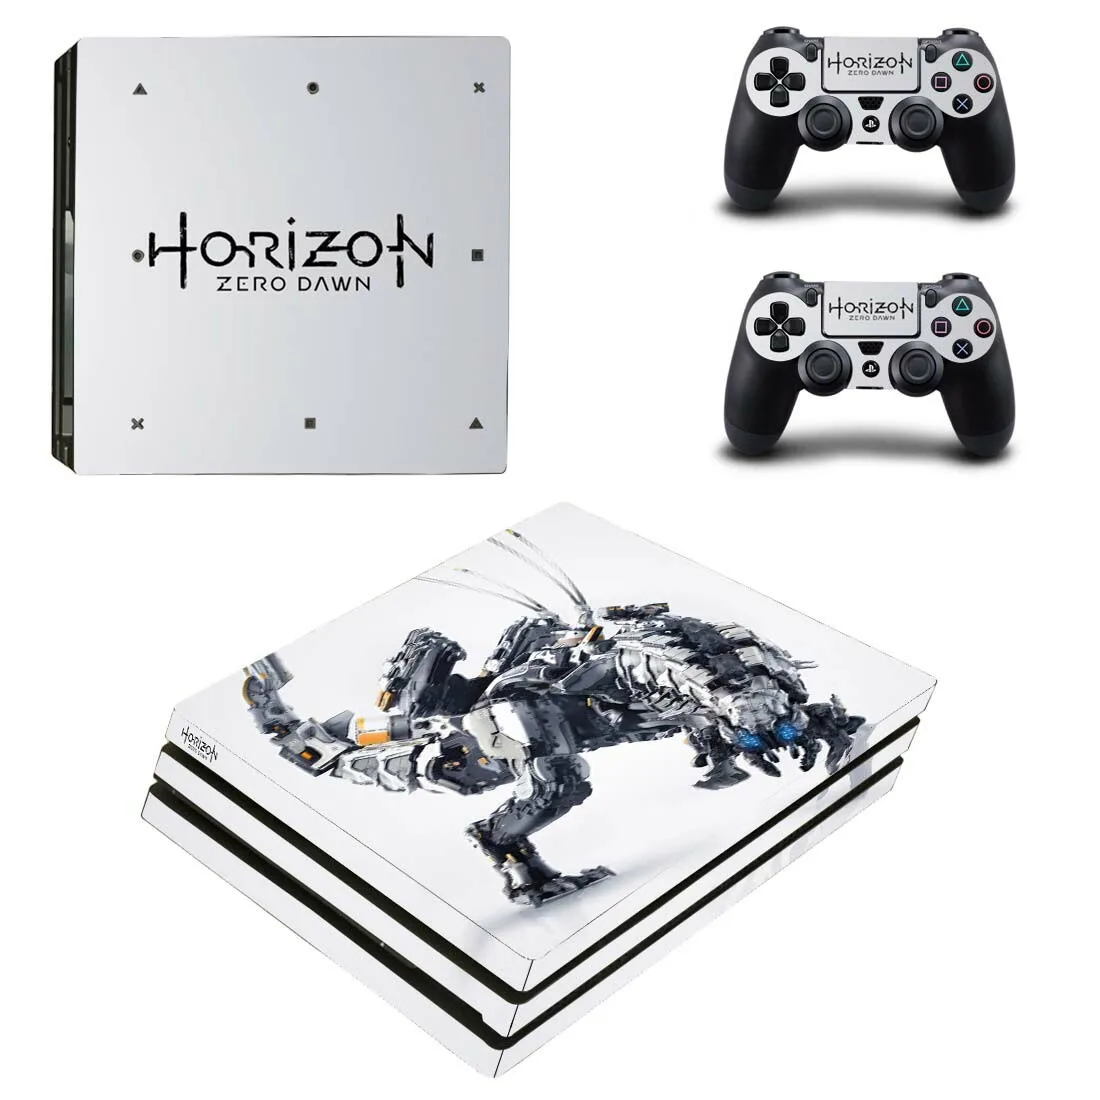 Horizon Zero Dawn PS4 Pro наклейка s Play station 4 кожа Наклейка Обложка для playstation 4 PS4 Pro консоль и контроллер скины